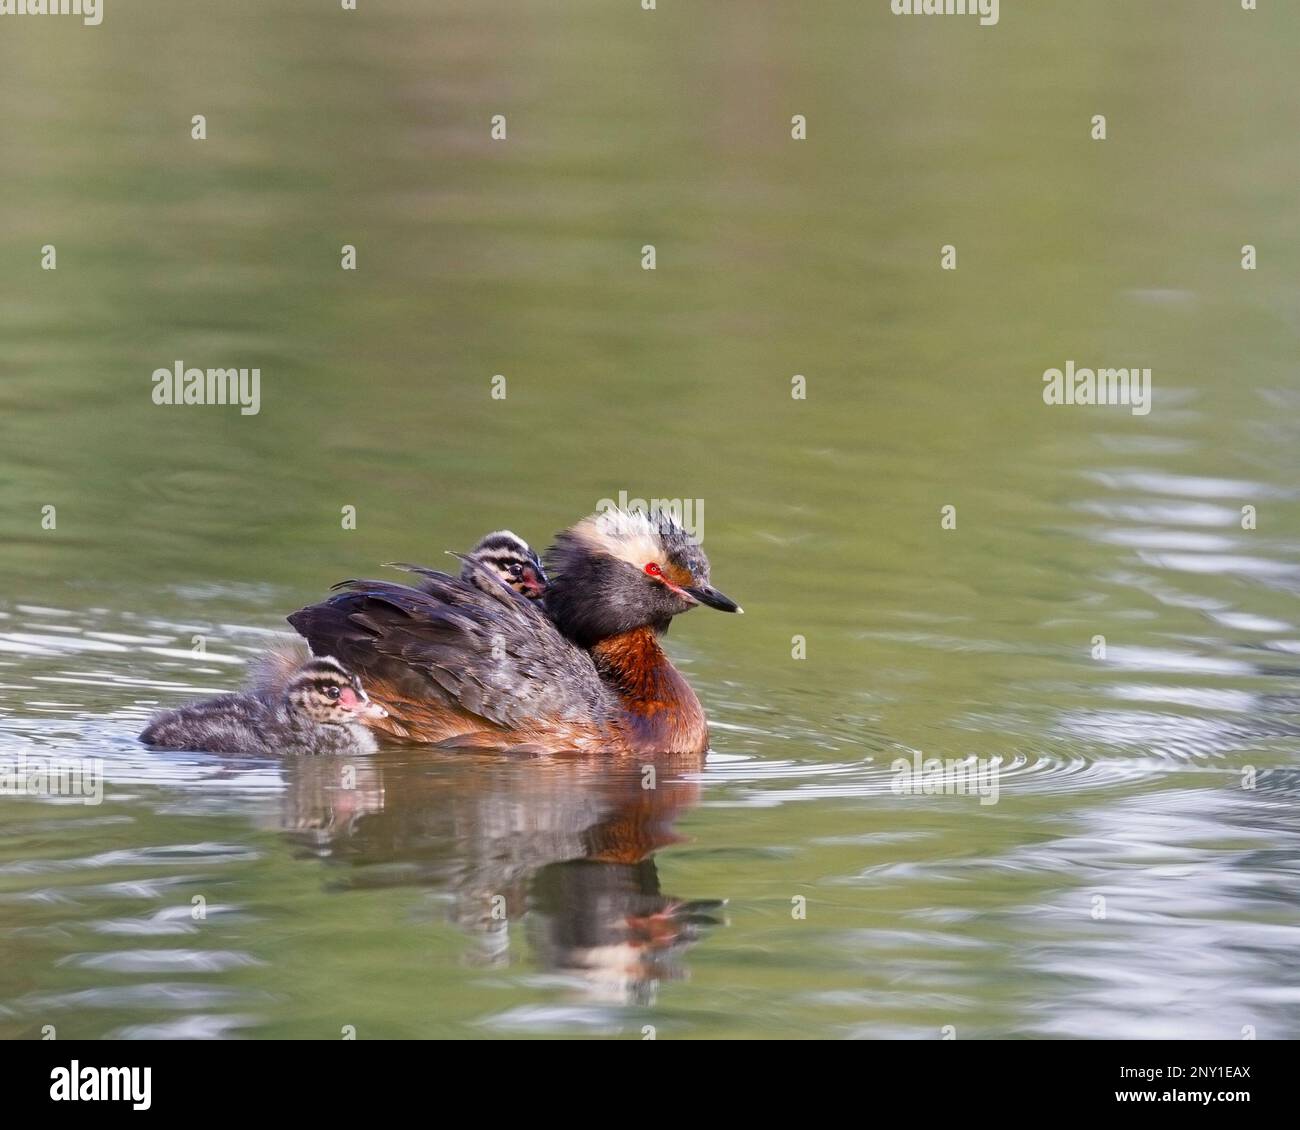 Horn-Grebe-Elternvogel mit einer Küken, die auf dem Rücken der Eltern reitet und die andere in der Nähe schwimmt. Kanada. Podiceps auritus Stockfoto